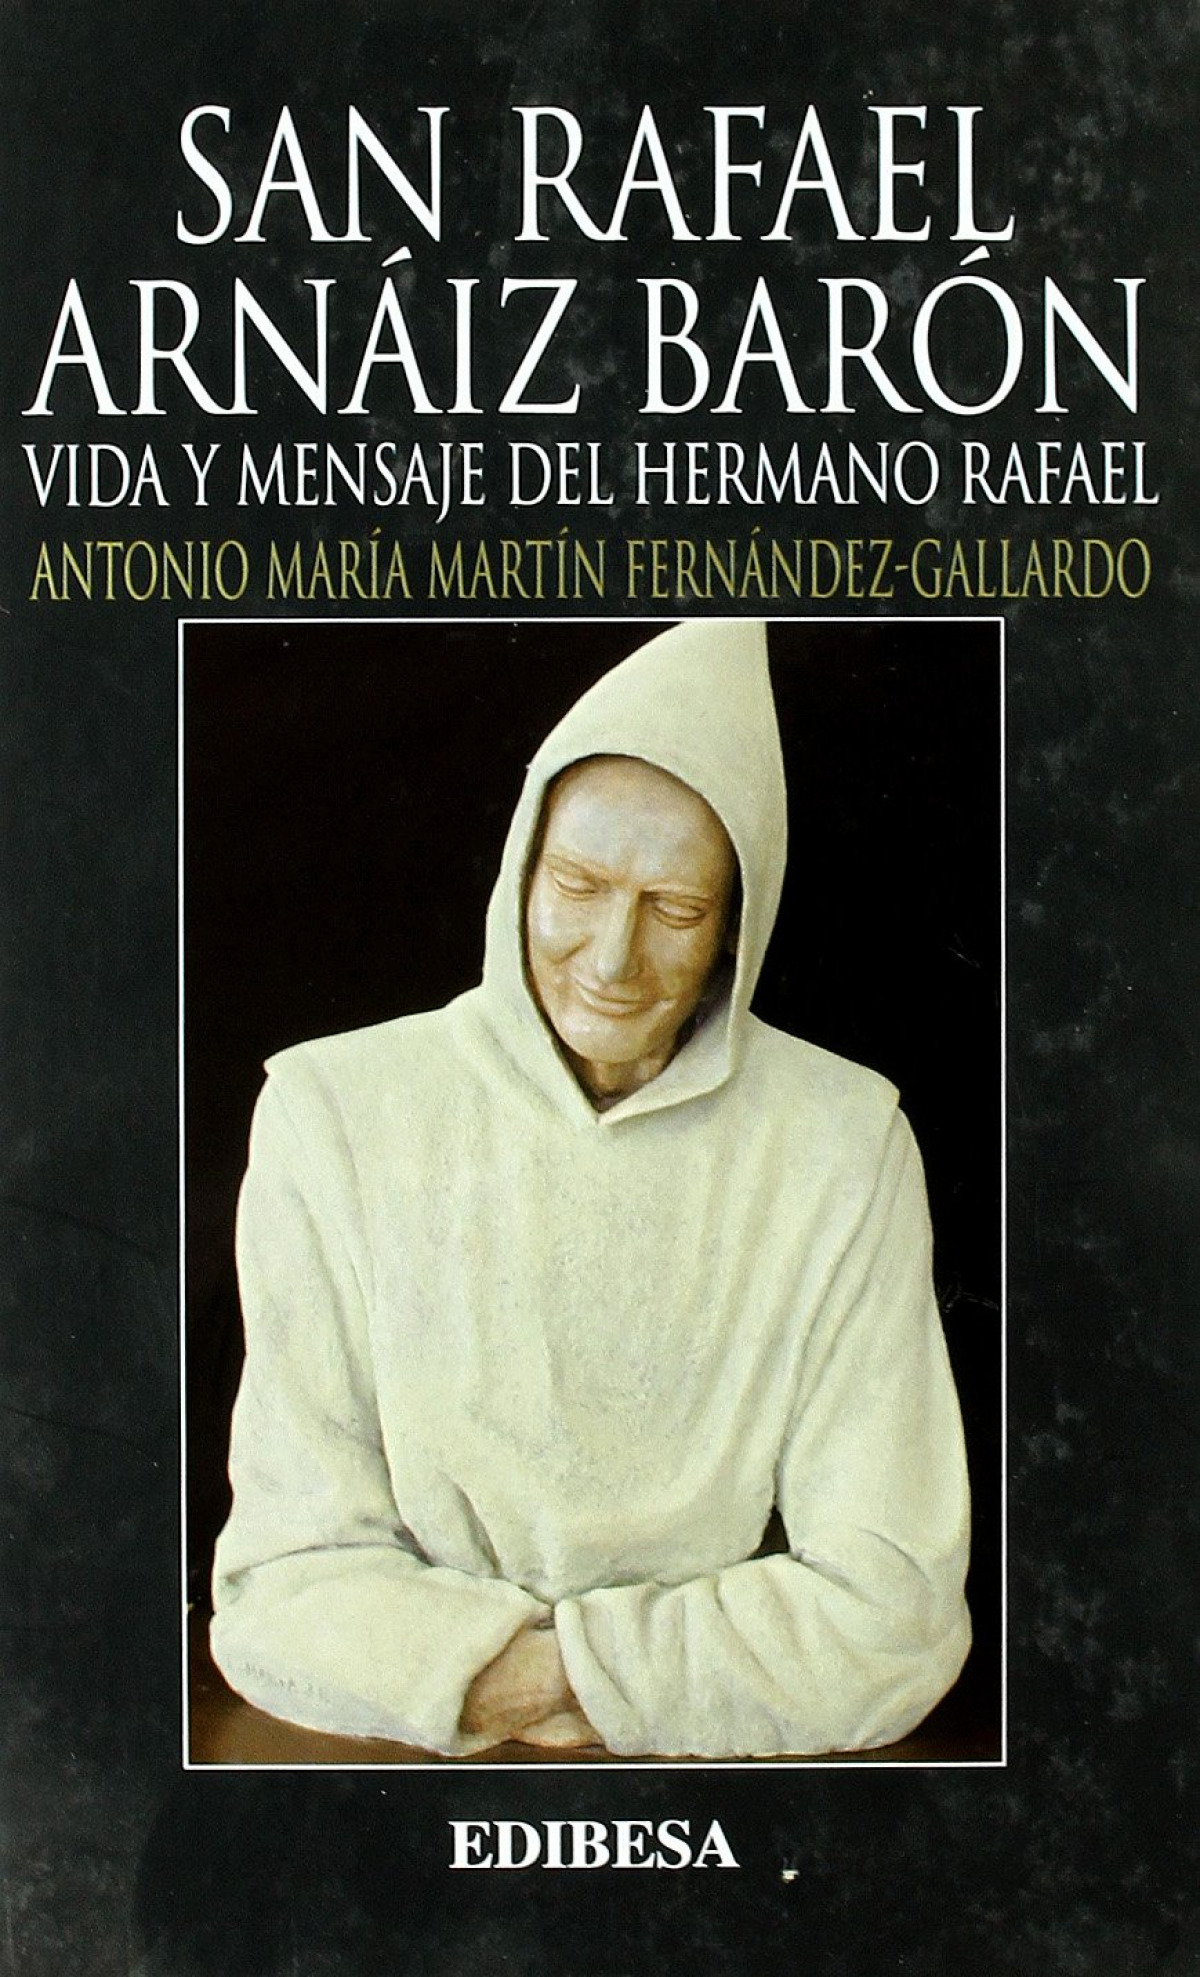 San rafael arnaiz baron-vida y mensaje del hermano rafael - Martin Fernadz-gallardo,Antonio Maria